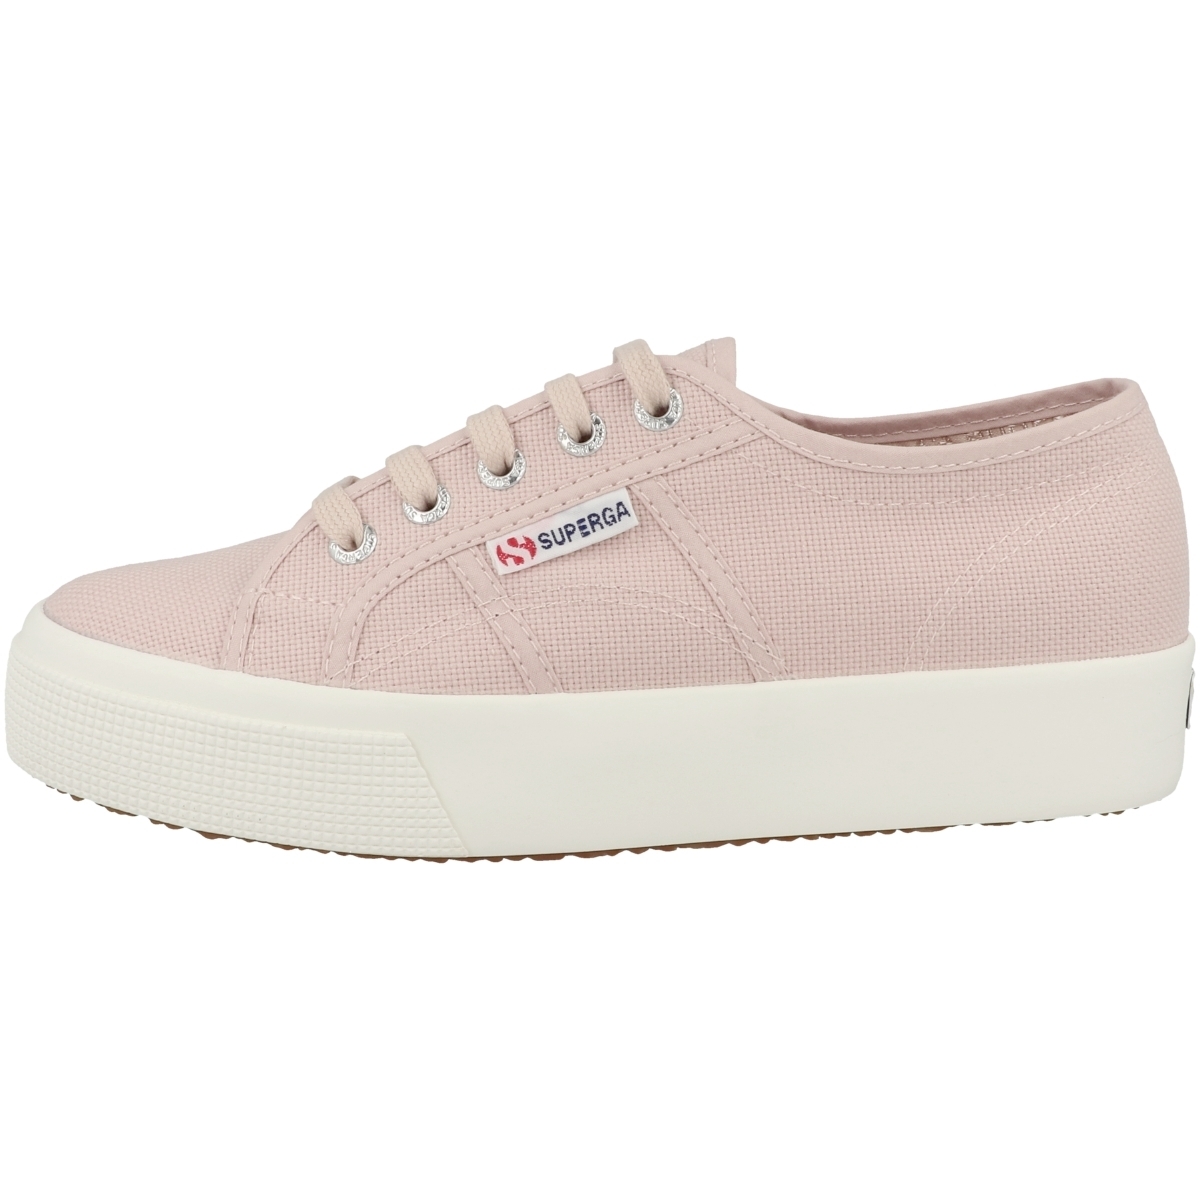 Superga 2730 Cotu Sneaker low pink